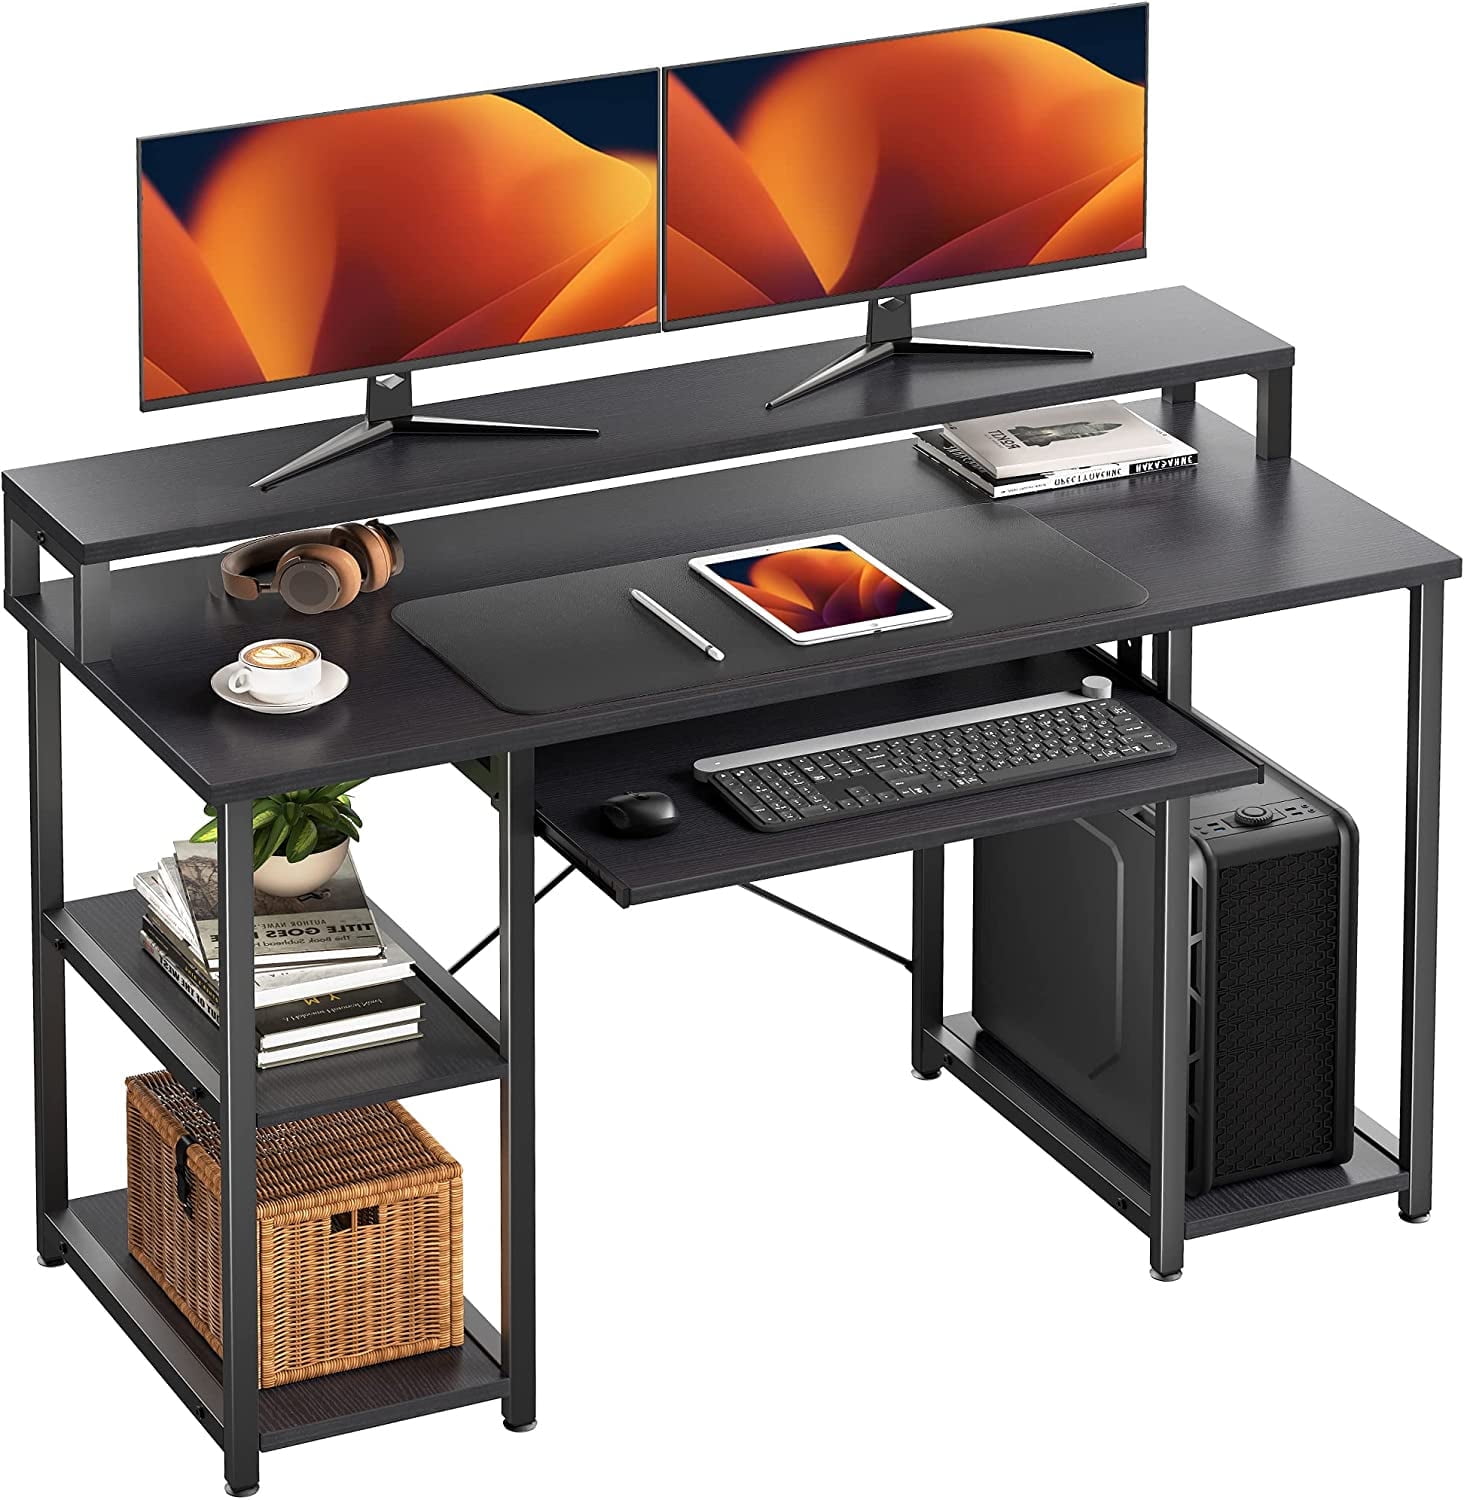 SUNLEI Computer Desk 47 inch Home Office Desks, Gaming Writing Desk Large  Work Desk Study Workstation, Laptop Stand for Desk, Simple Assembly, Steel